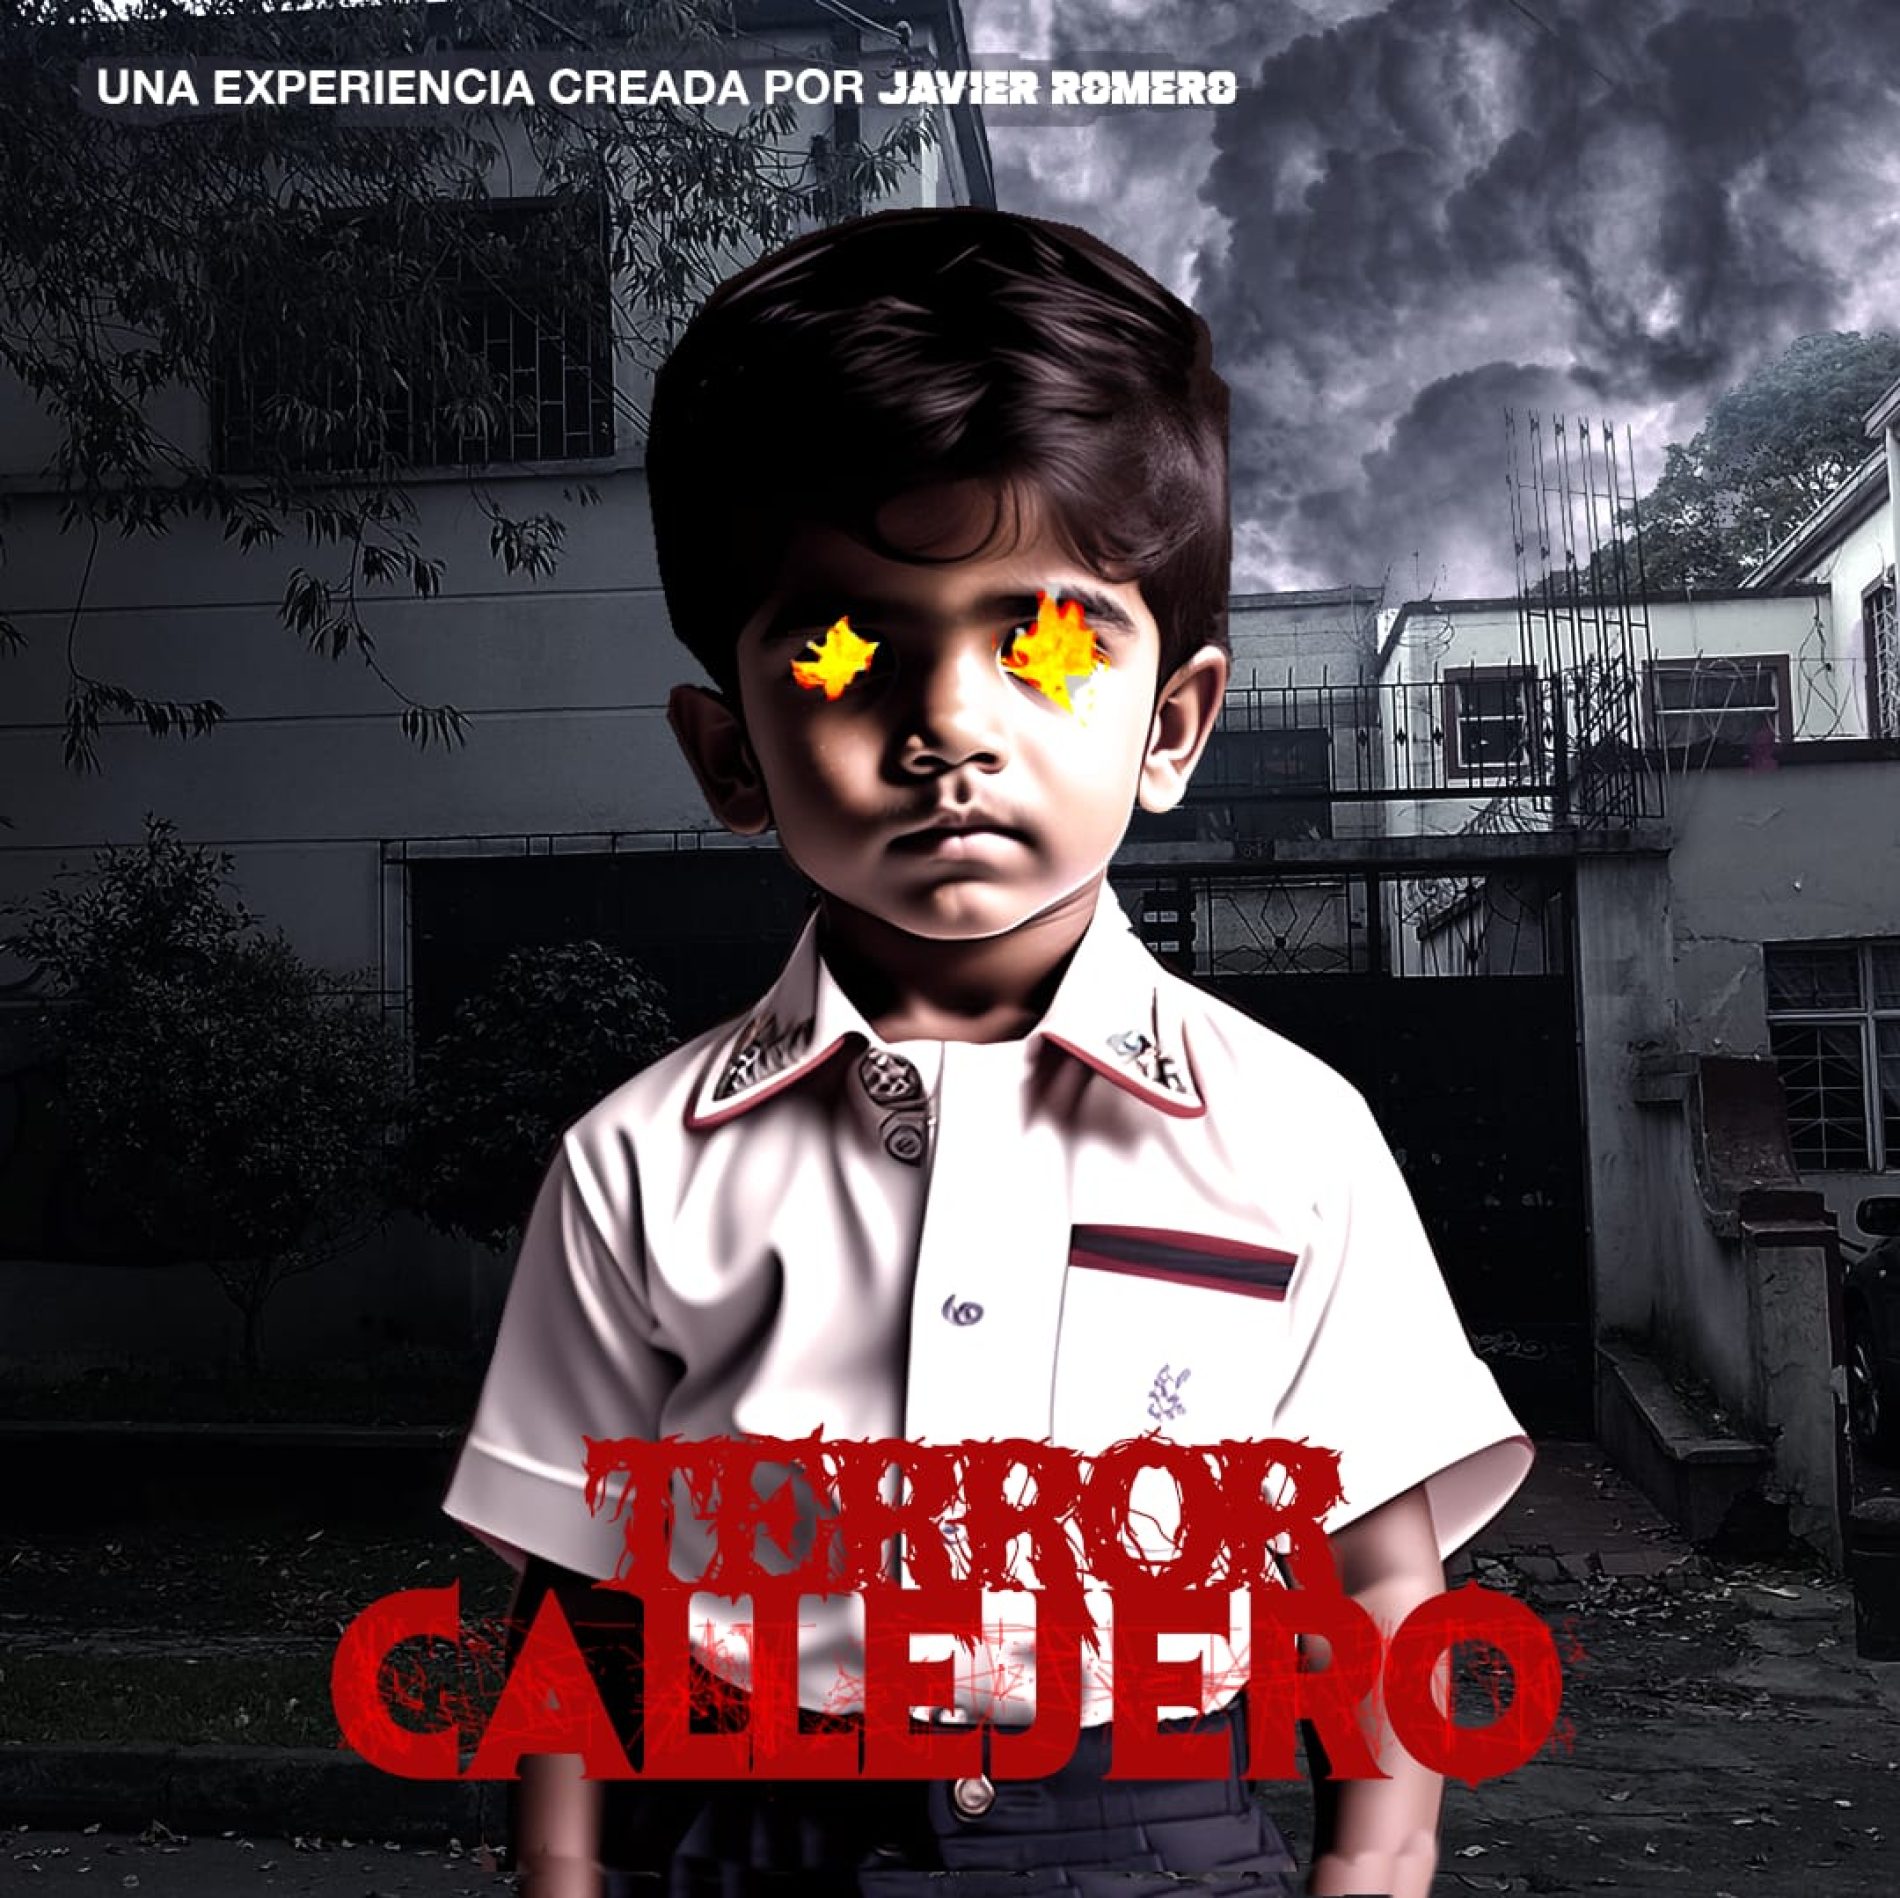 El escritor de terror Javier Romero presenta: “Terror Callejero” un tour por la Bogotá oscura